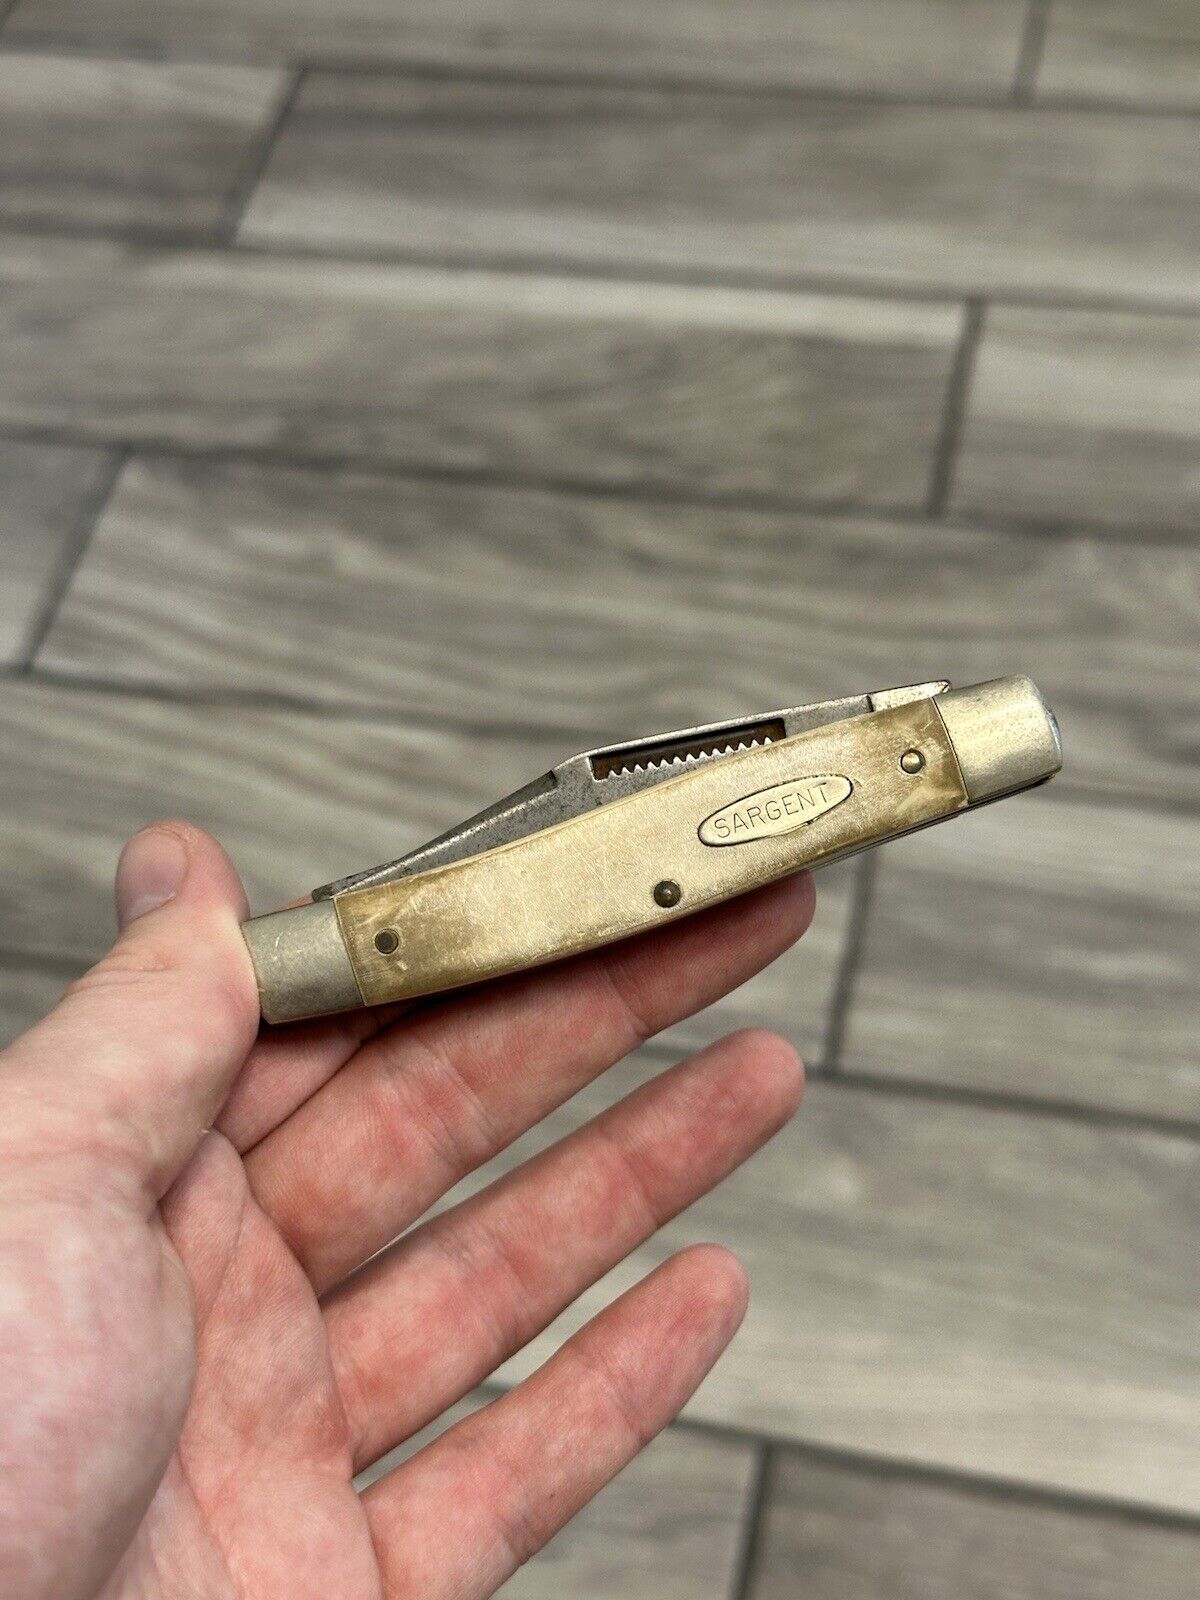 SARGENT USA OLD SARGE POCKET KNIFE (ITEM #6244C4)